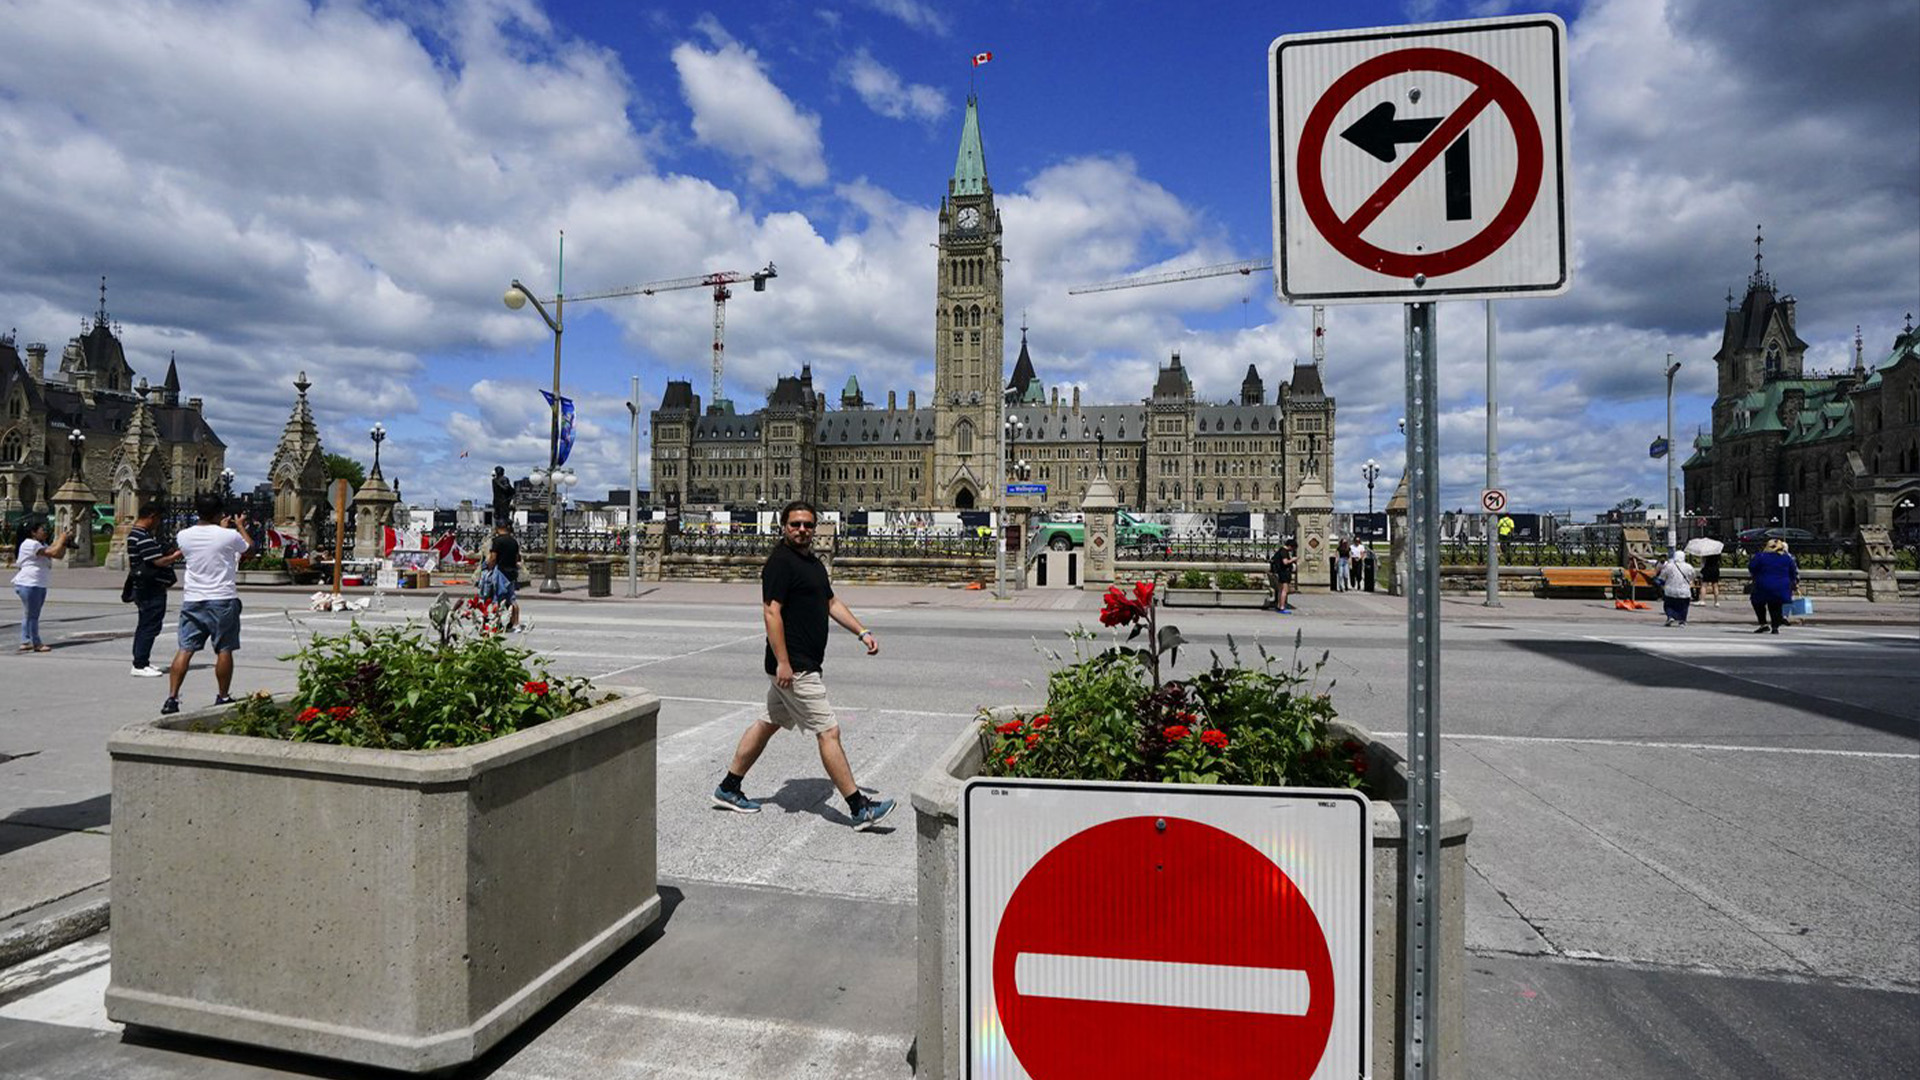 Le soldat canadien James Topp, qui fait face à des accusations après avoir dénoncé les exigences vaccinales contre la COVID-19, défilera à Ottawa jeudi, donnant le coup d'envoi à ce que les organisateurs décrivent comme une nouvelle vague de manifestations tout au long de l'été.